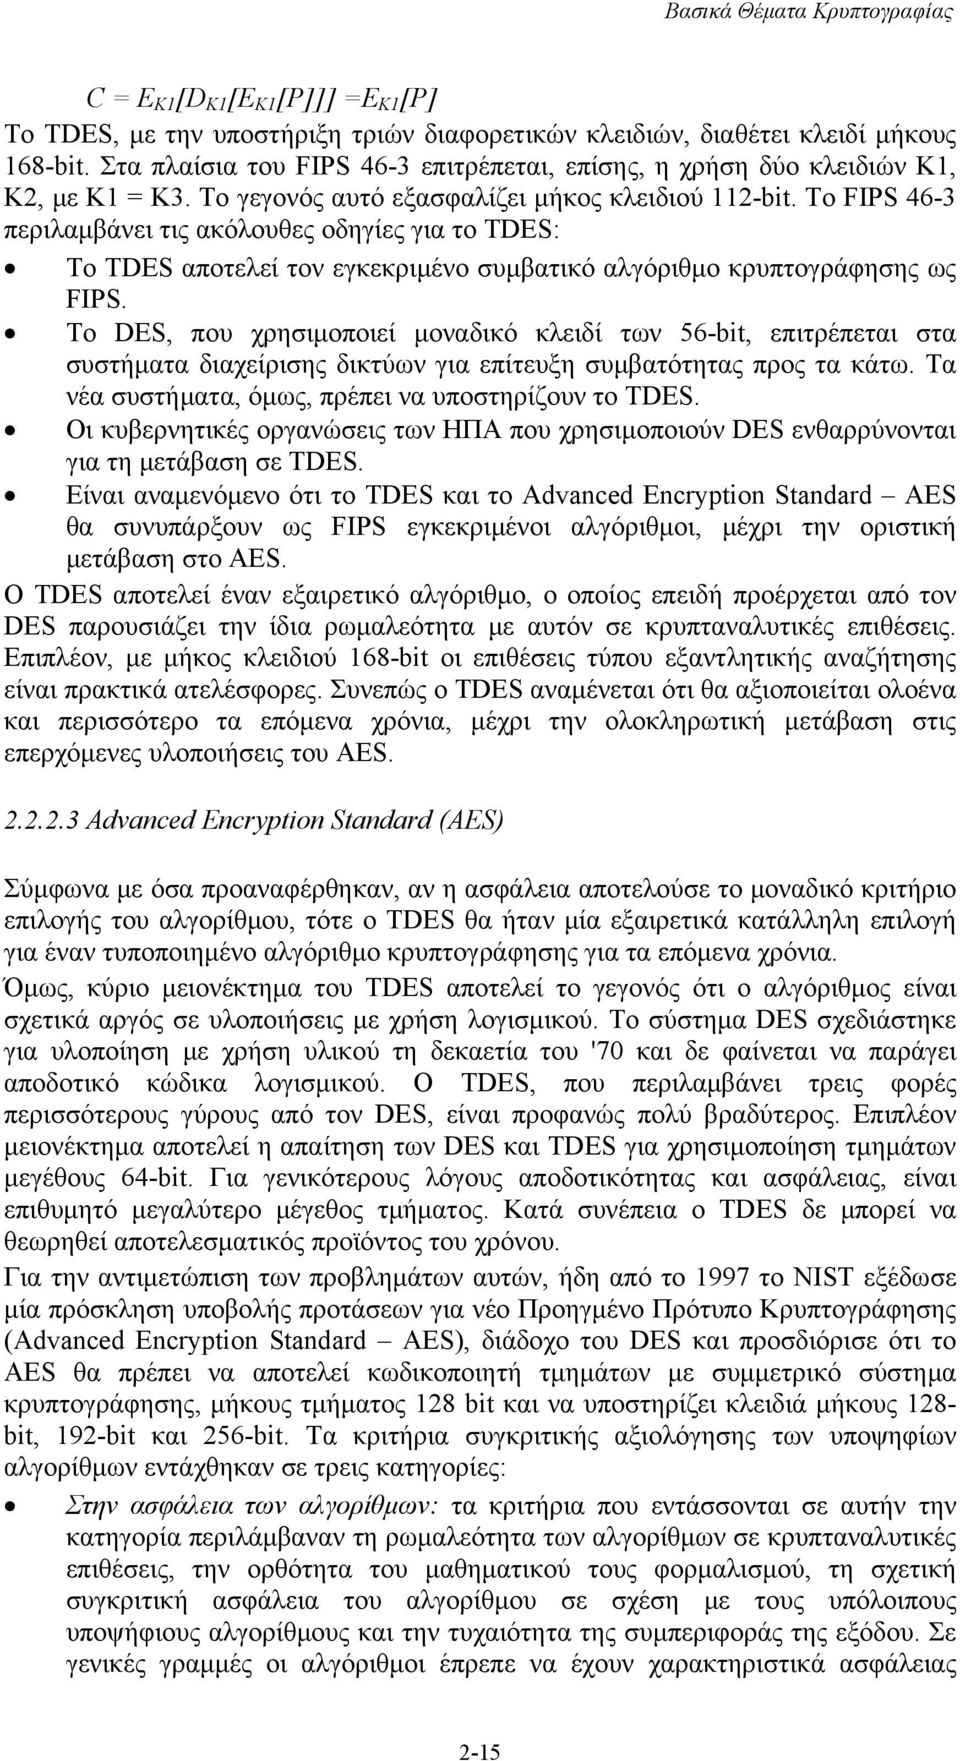 Το FIPS 46-3 περιλαμβάνει τις ακόλουθες οδηγίες για το TDES: Το TDES αποτελεί τον εγκεκριμένο συμβατικό αλγόριθμο κρυπτογράφησης ως FIPS.